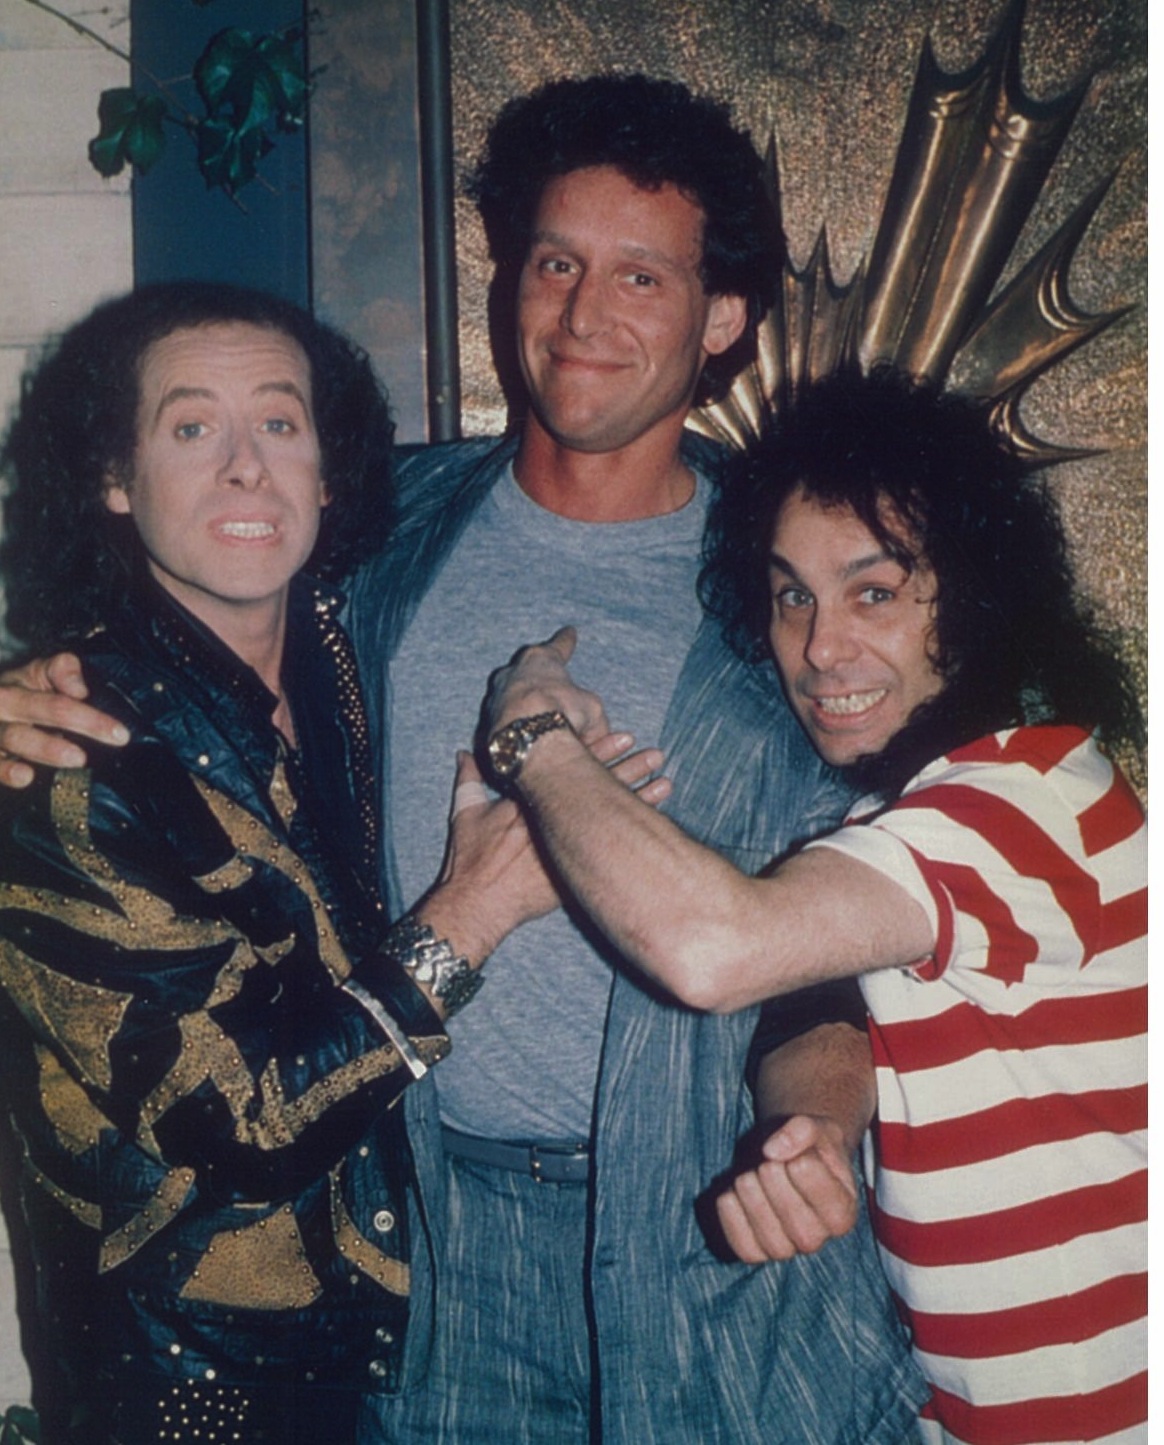 Rob Steinberg with Klaus Meine & Ronnie James Dio